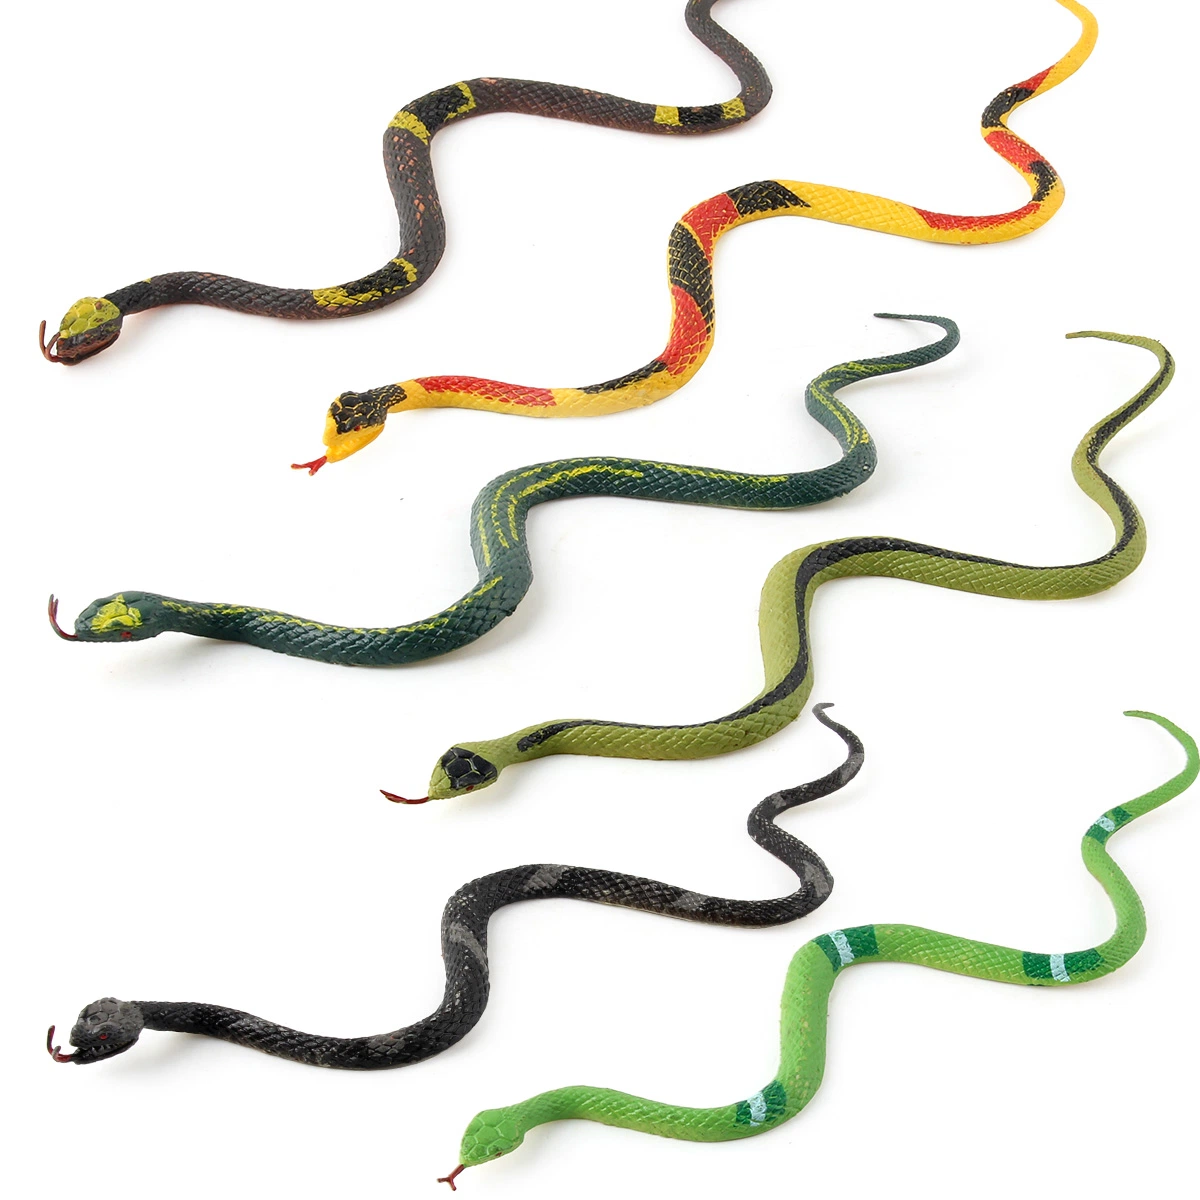 6 PEÇAS 25 cm, várias cobras para a floresta tropical, replica os répteis elásticos Limbless Replica Gag Toy Idea Carnival Game Prêmios Ciência e natureza modelo Brinquedo cobra